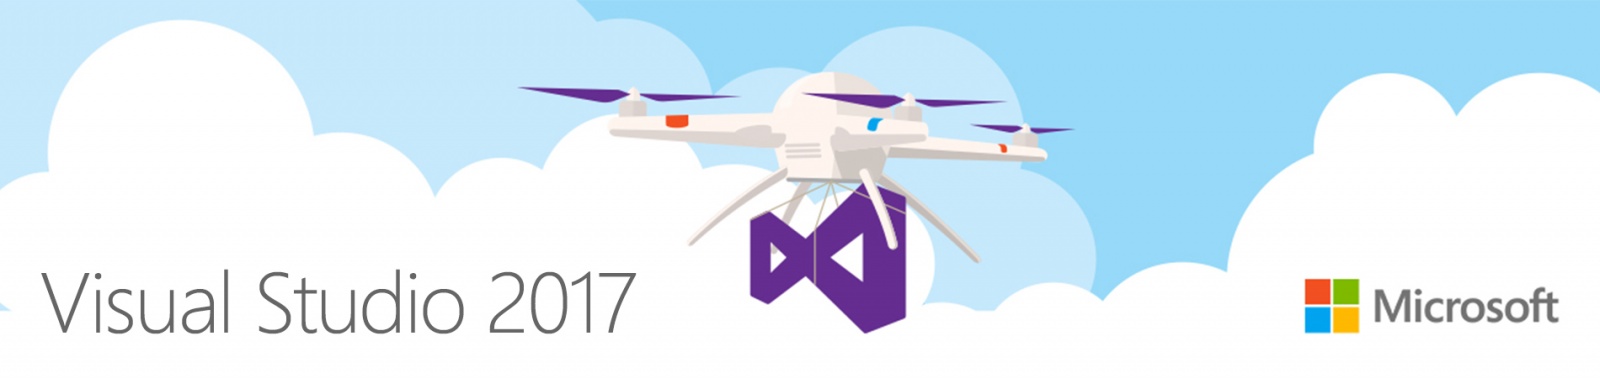 Visual Studio 2017 и новые возможности инструментов от Microsoft - 1